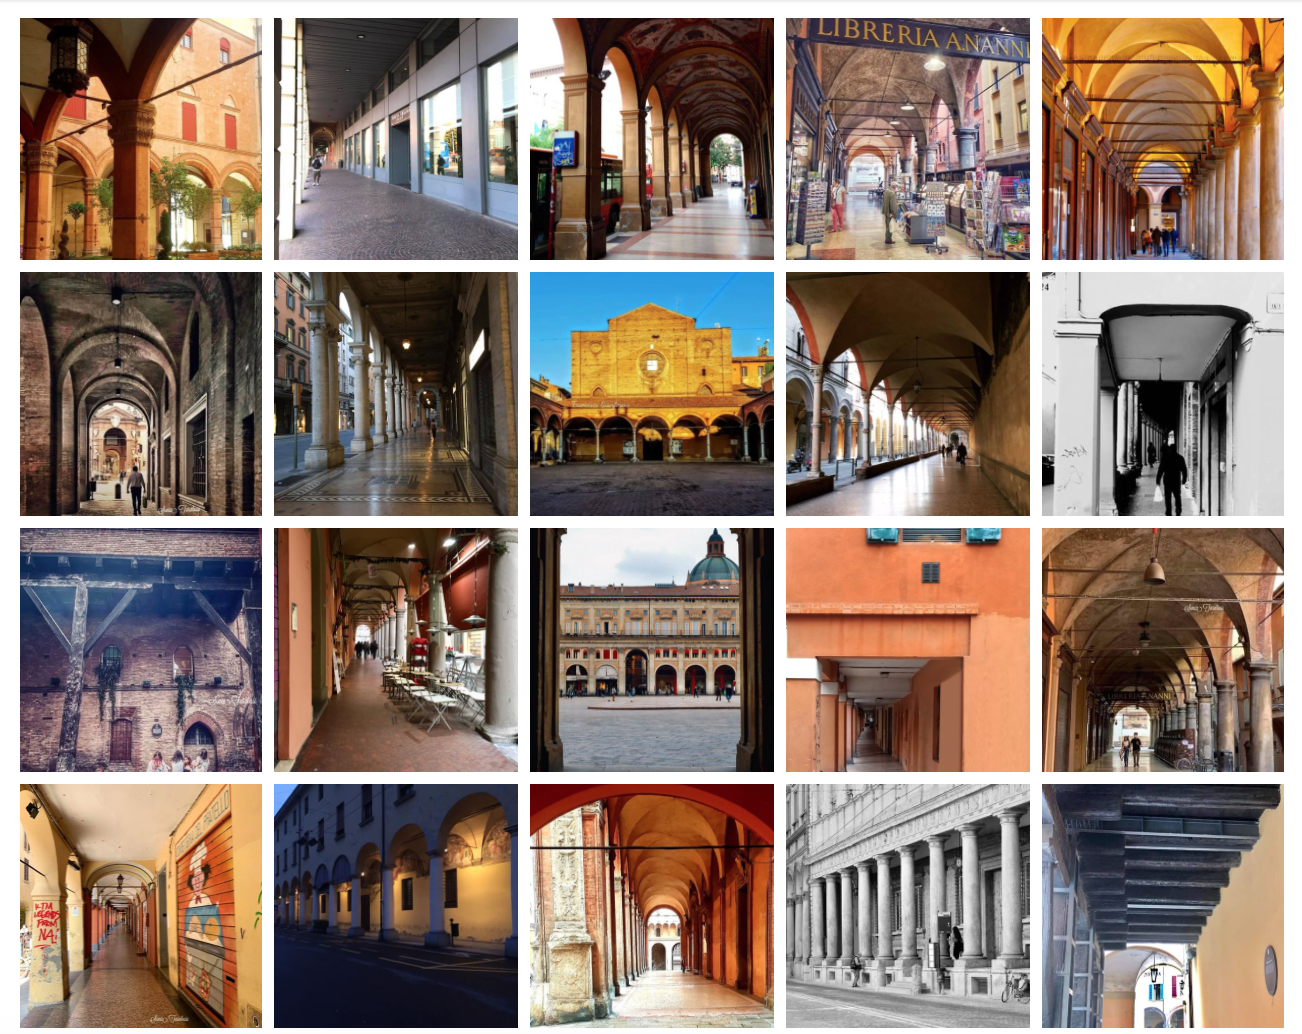 Portici di Bologna. Raggiunti i 3.500 iscritti al Gruppo Facebook oltre 2.200 foto postate dai cittadini